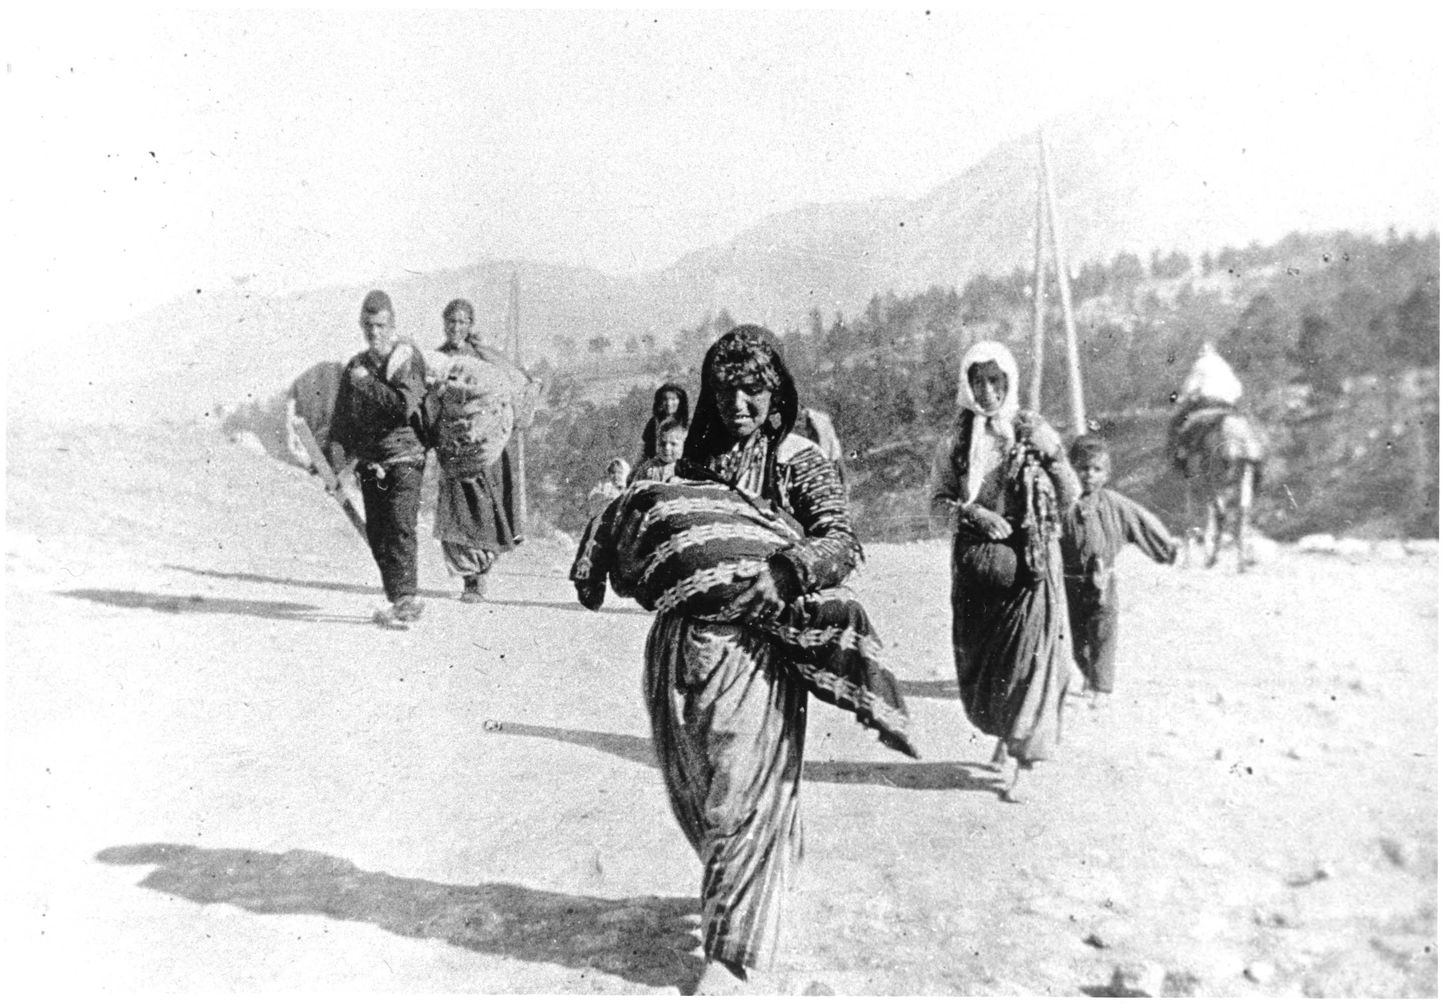 Osmani impeeriumi välja saadetud armeenia põgenikepere.